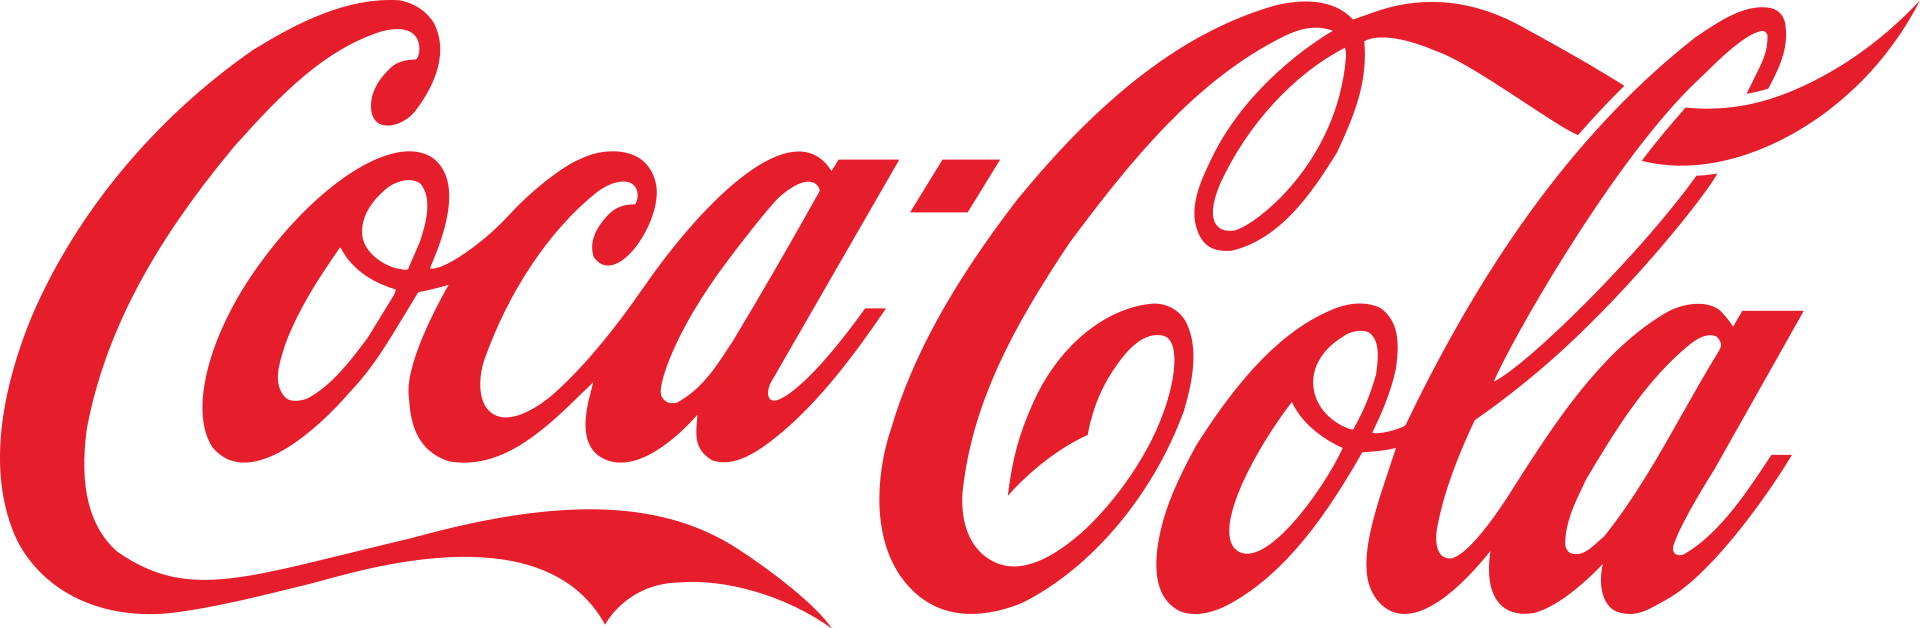 Historia Real de la Coca-Cola y sus Origen Español.